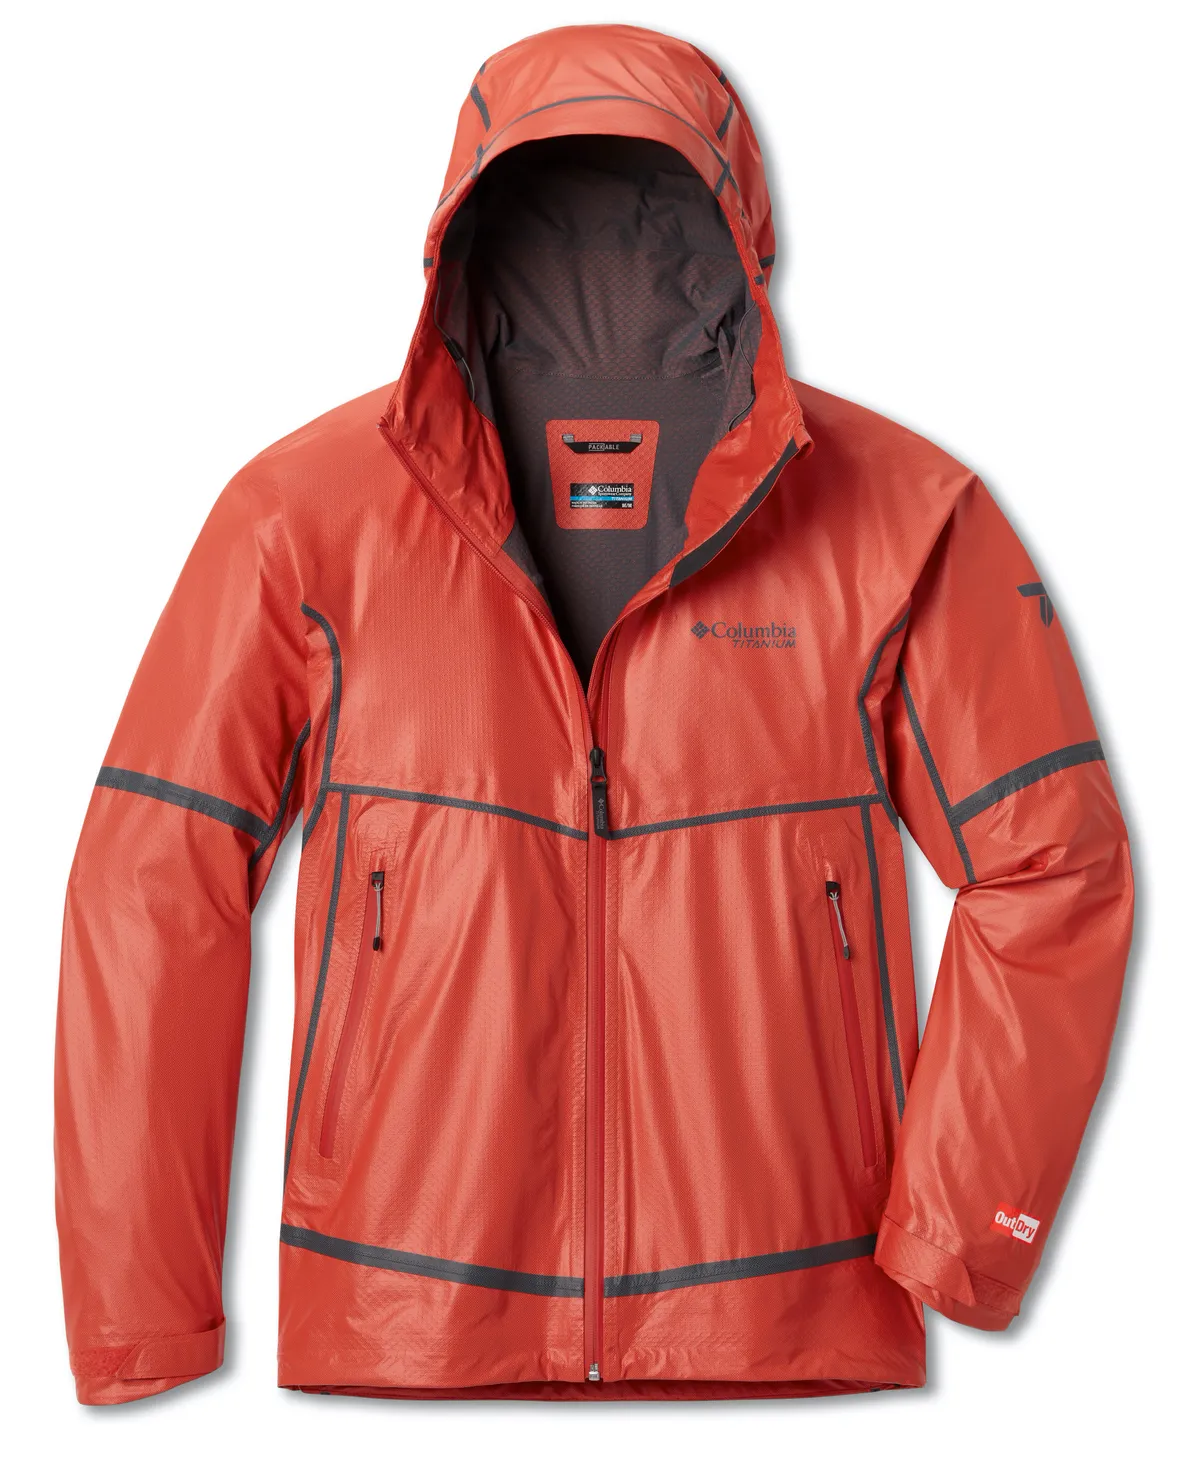 Red waterproof rain jacket for hikers